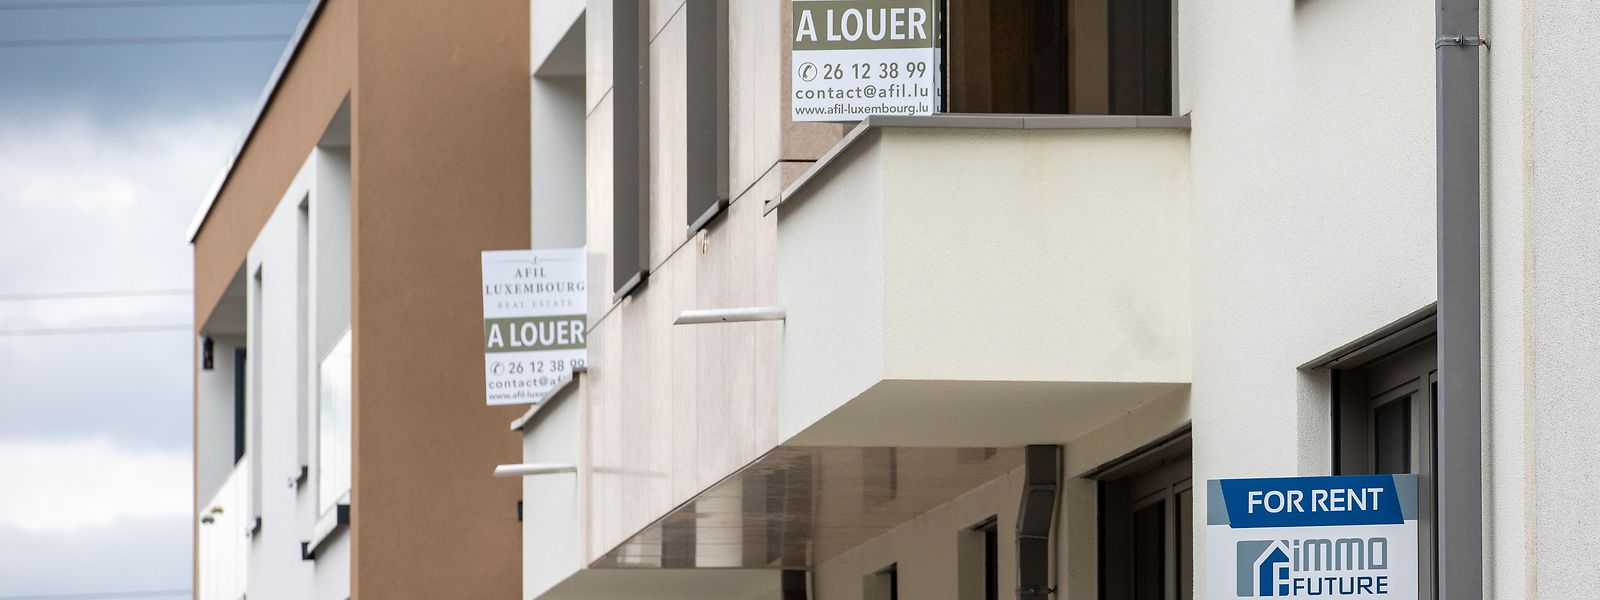 Anfang des Jahres sind die Zinsen für langfristige Immobilienkredite in Luxemburg von 1,4 Prozent auf fast zwei Prozent gestiegen. 